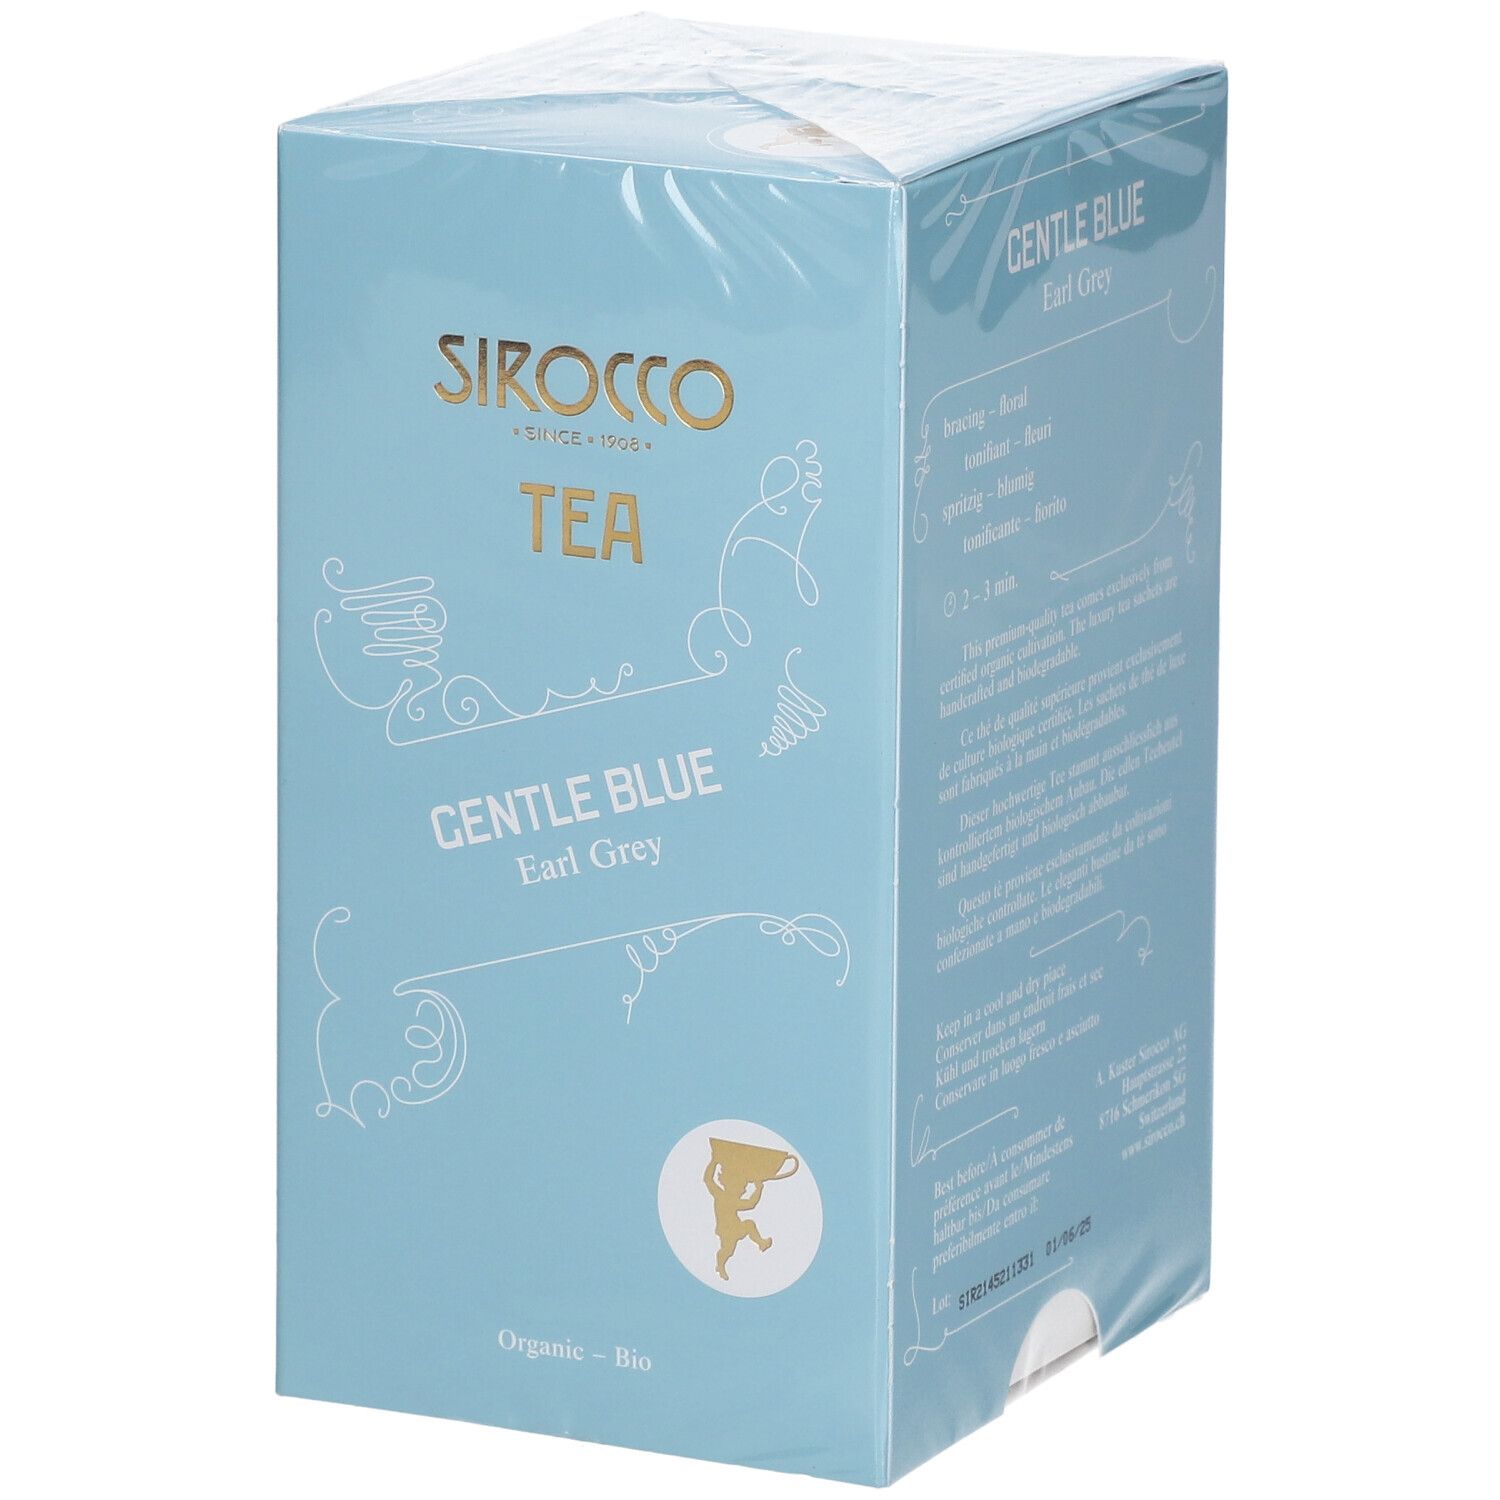 Sirocco Bio Tee Gentle Blue Earl Grey Tea